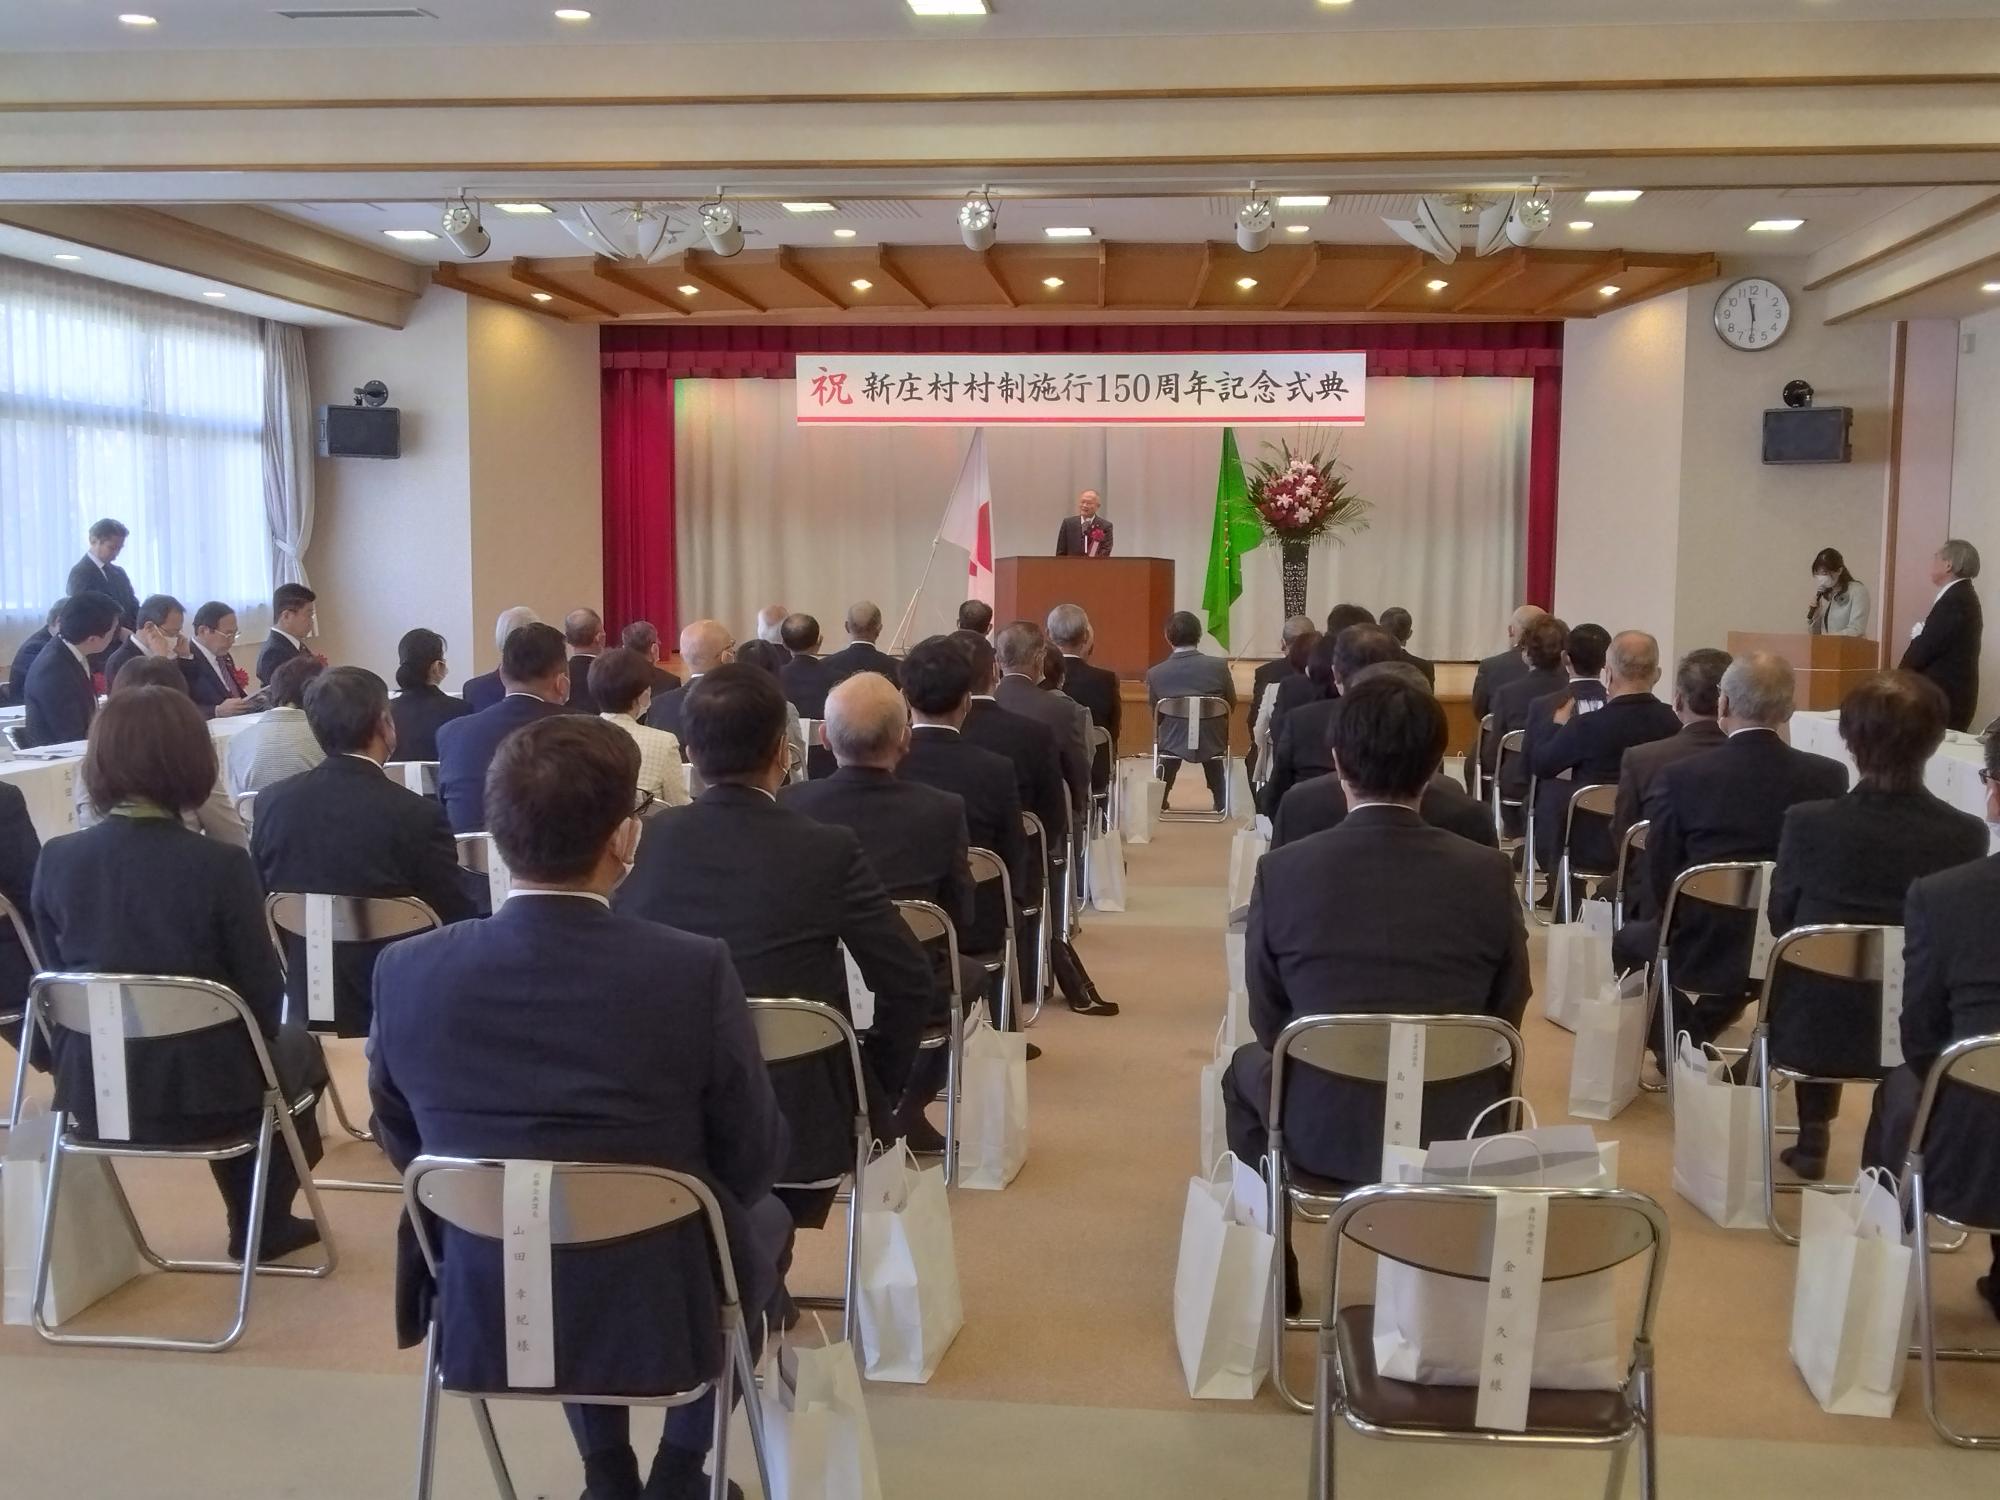 新庄村村制150周年記念式典で挨拶される市長